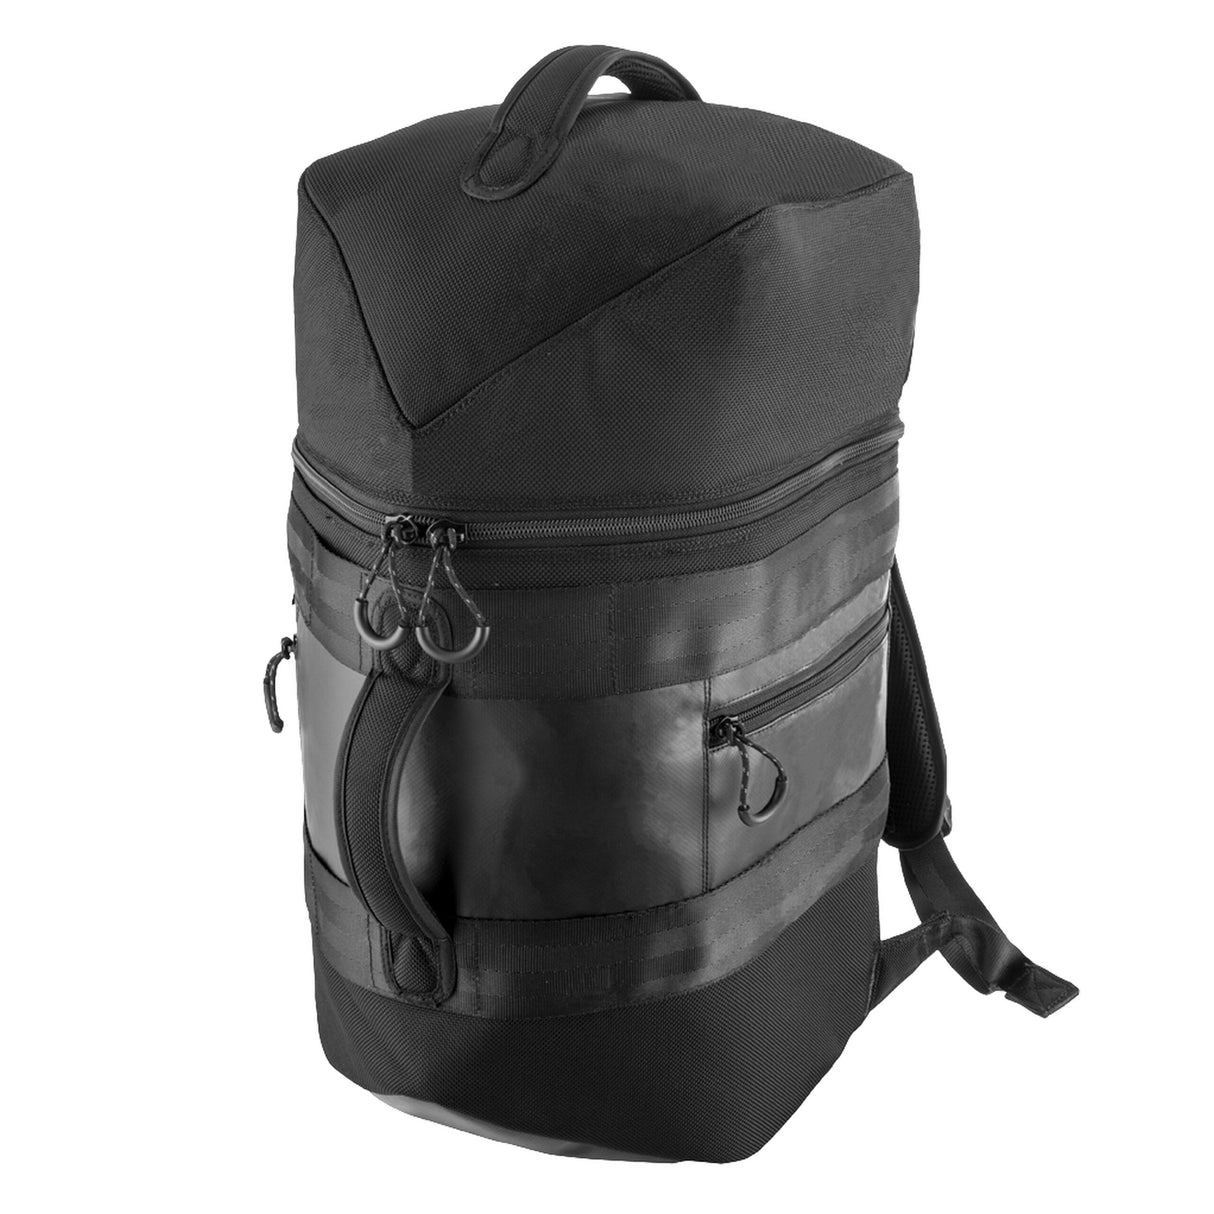 Bose S1 Pro System Backpack, Black